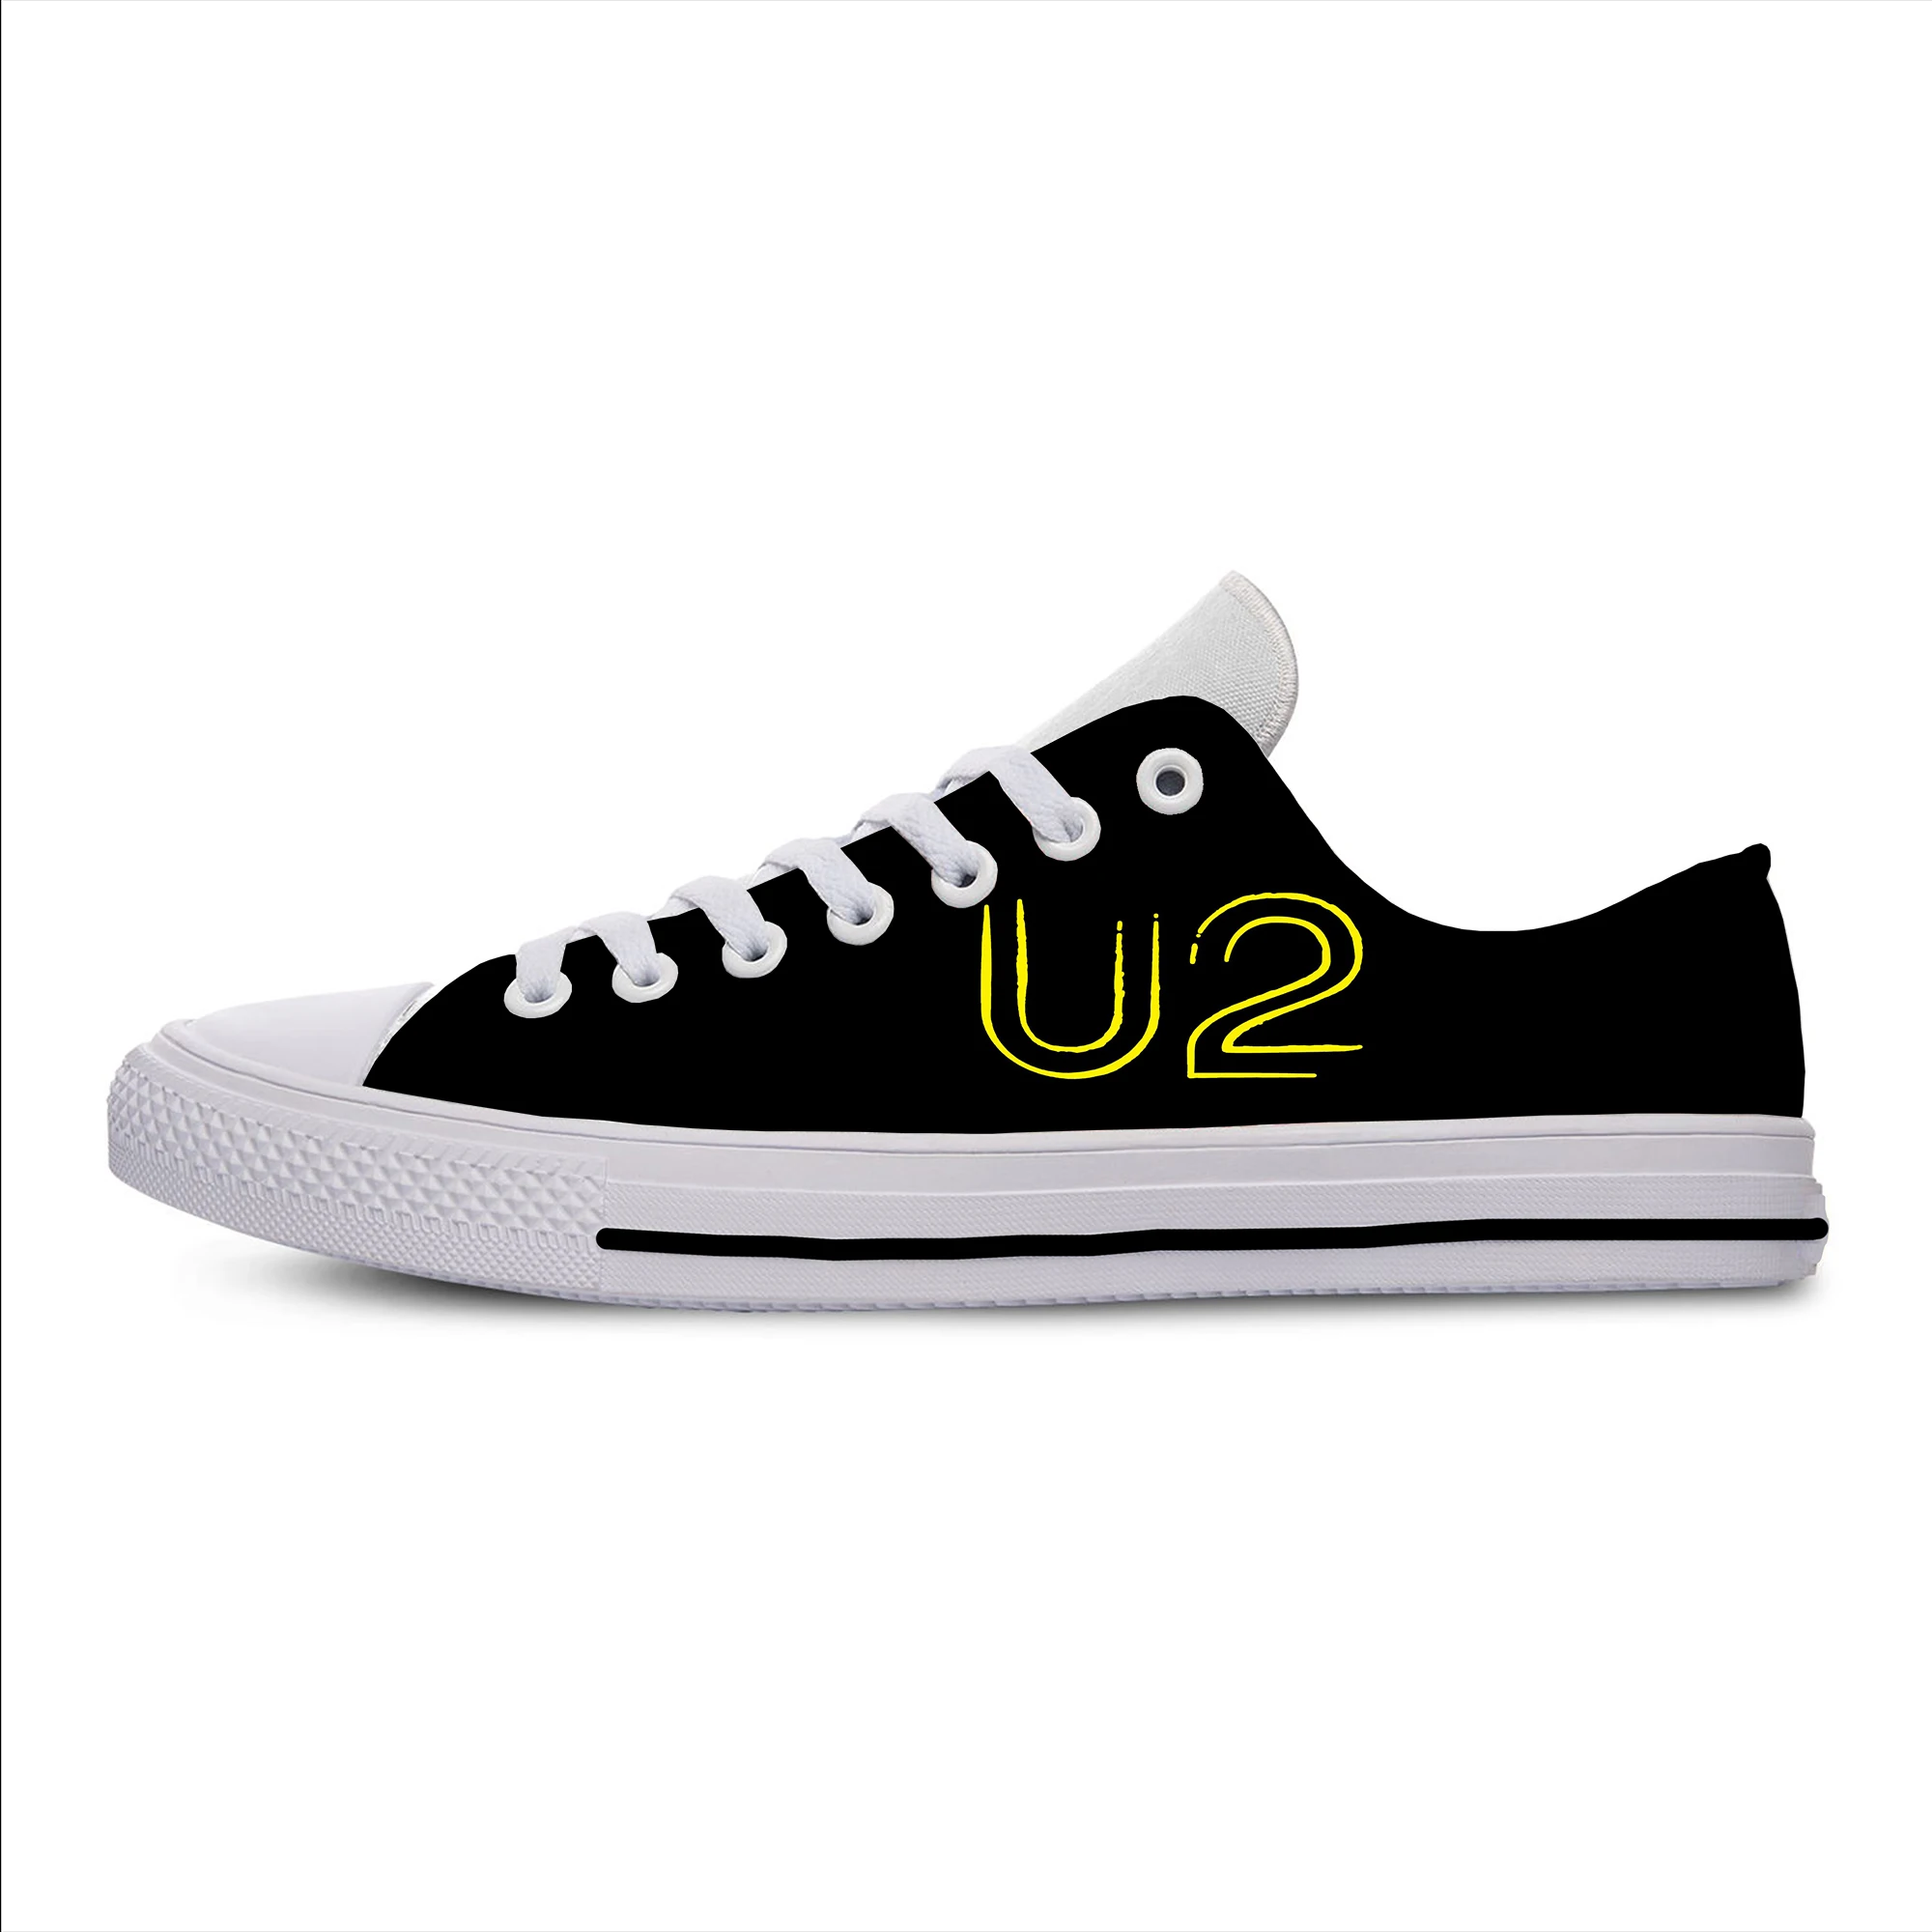 Г. Новая прогулочная обувь с музыкальным ремешком U2 Удобная уличная Женская Повседневная легкая дышащая обувь с 3D принтом - Цвет: Music Band U23